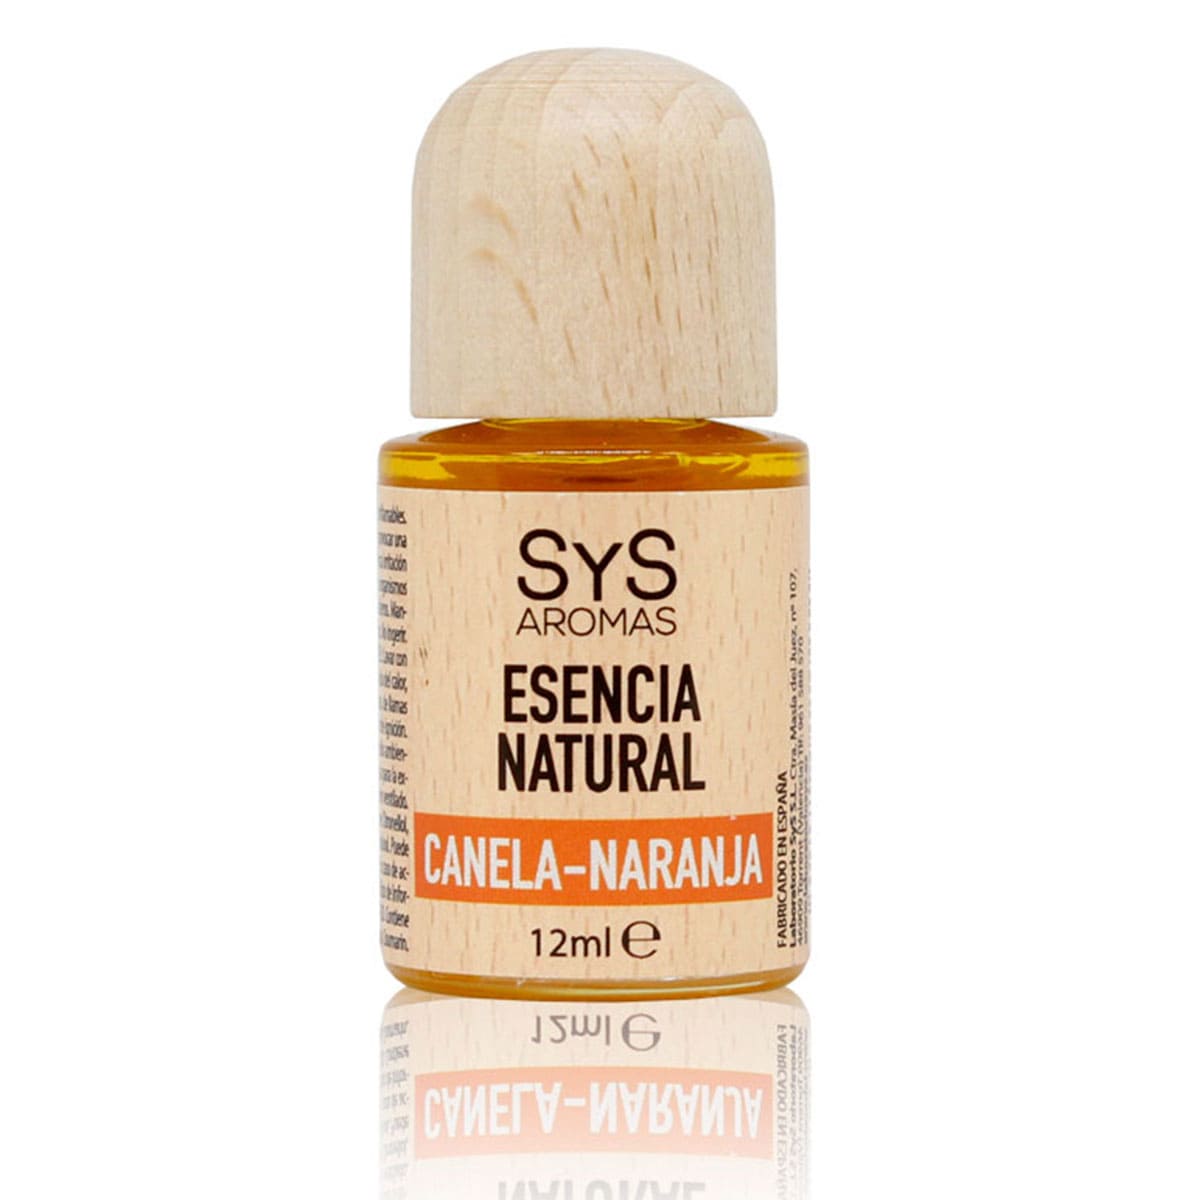 Buy Orange-Cinnamon Essence 12ml SYS Aromas